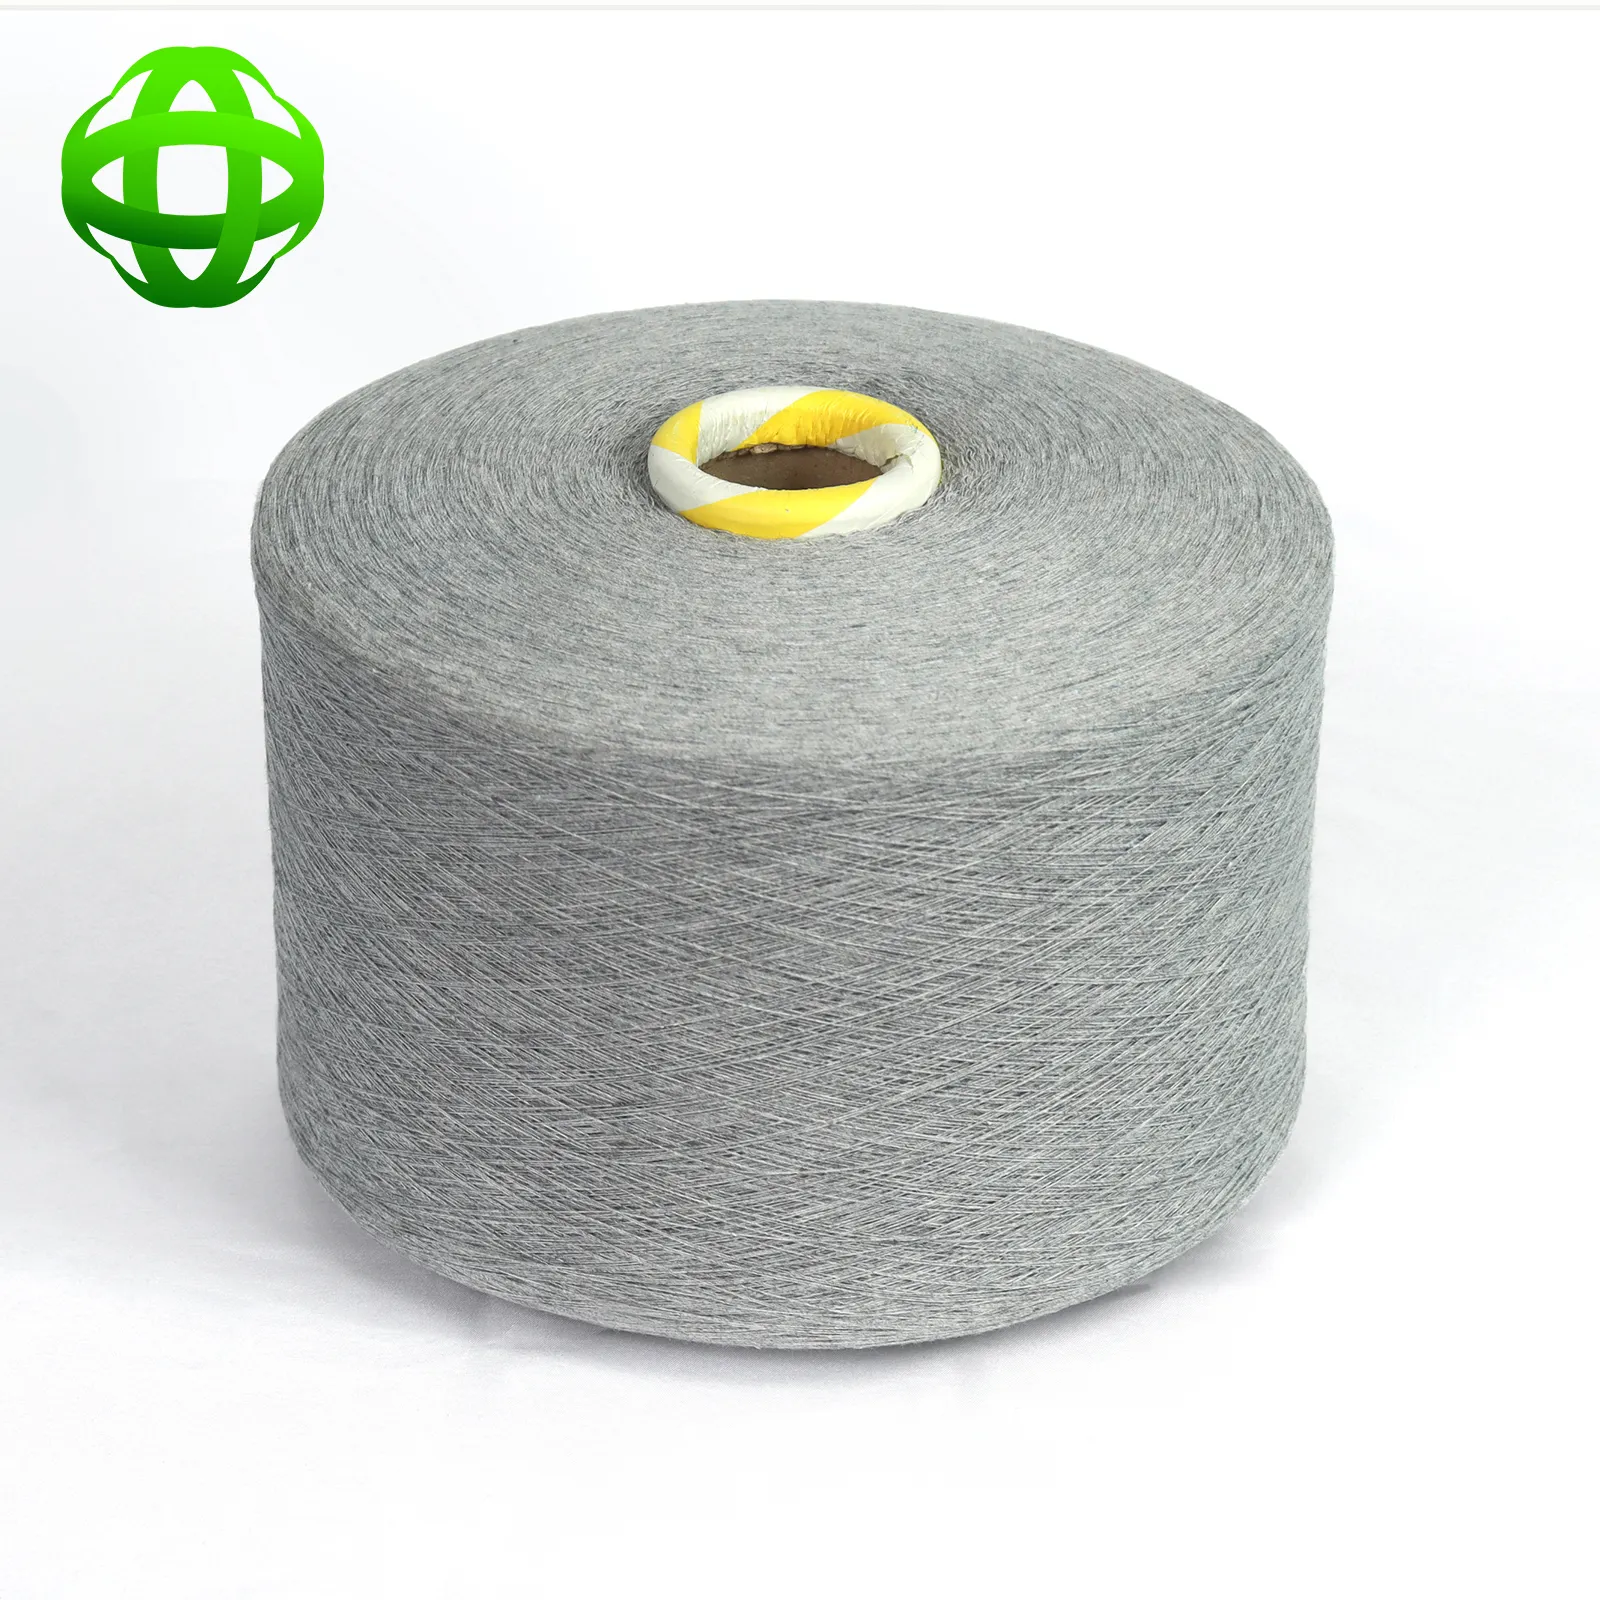 GRS-zertifiziertes elastisches recyceltes Garn für maschinen gestricktes Socken garn kardiert 30 1 Hersteller von recyceltem Baumwoll polyester garn